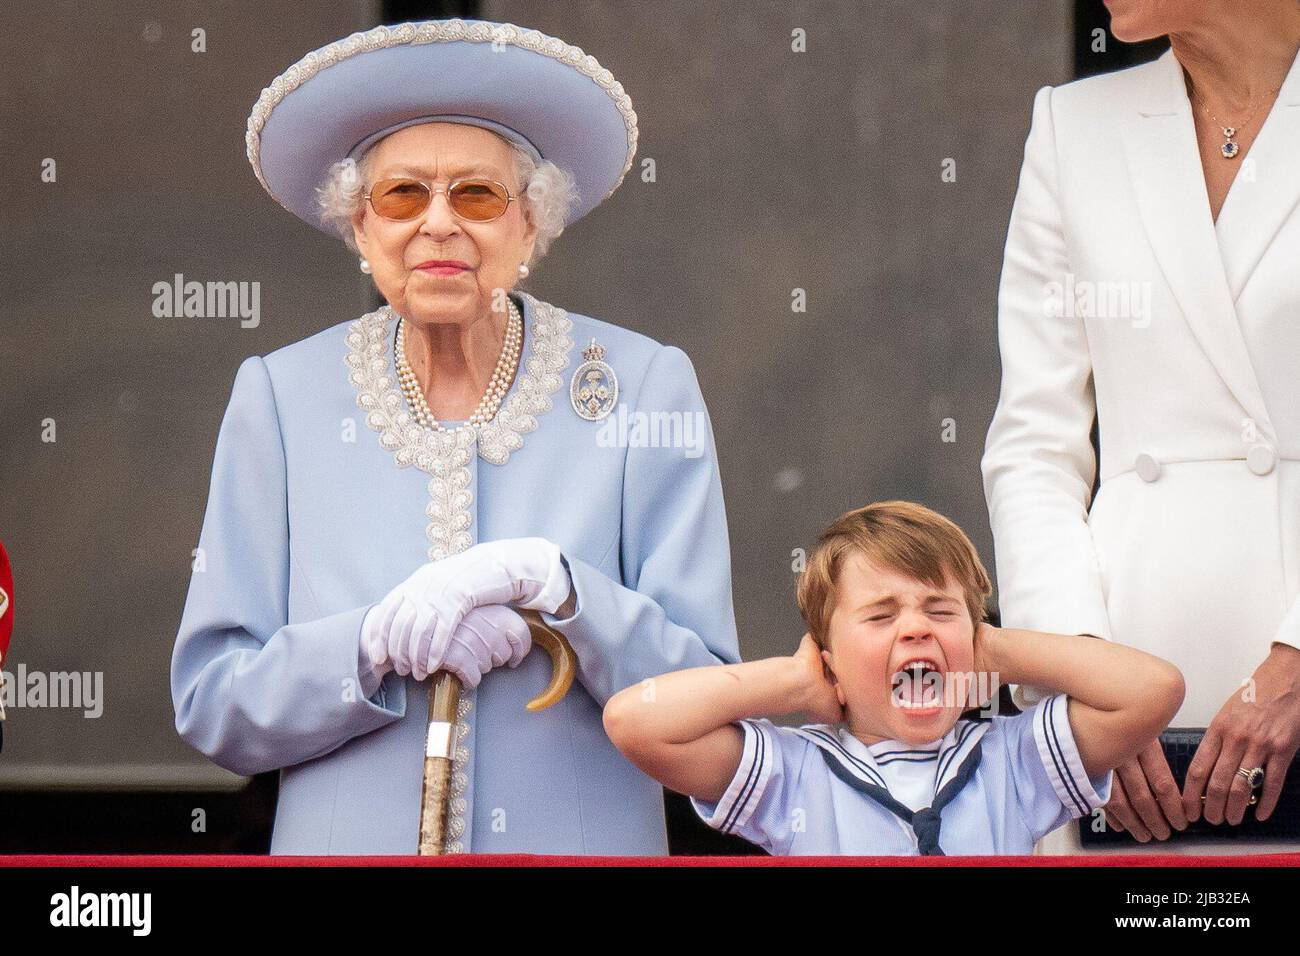 Königin Elizabeth II. Und Prinz Louis auf dem Balkon des Buckingham Palace nach der Trooping the Color Zeremonie bei der Horse Guards Parade im Zentrum von London, während die Queen ihren offiziellen Geburtstag feiert, am ersten Tag der Platinum Jubilee Feierlichkeiten. Bilddatum: Donnerstag, 2. Juni 2022.. Stockfoto